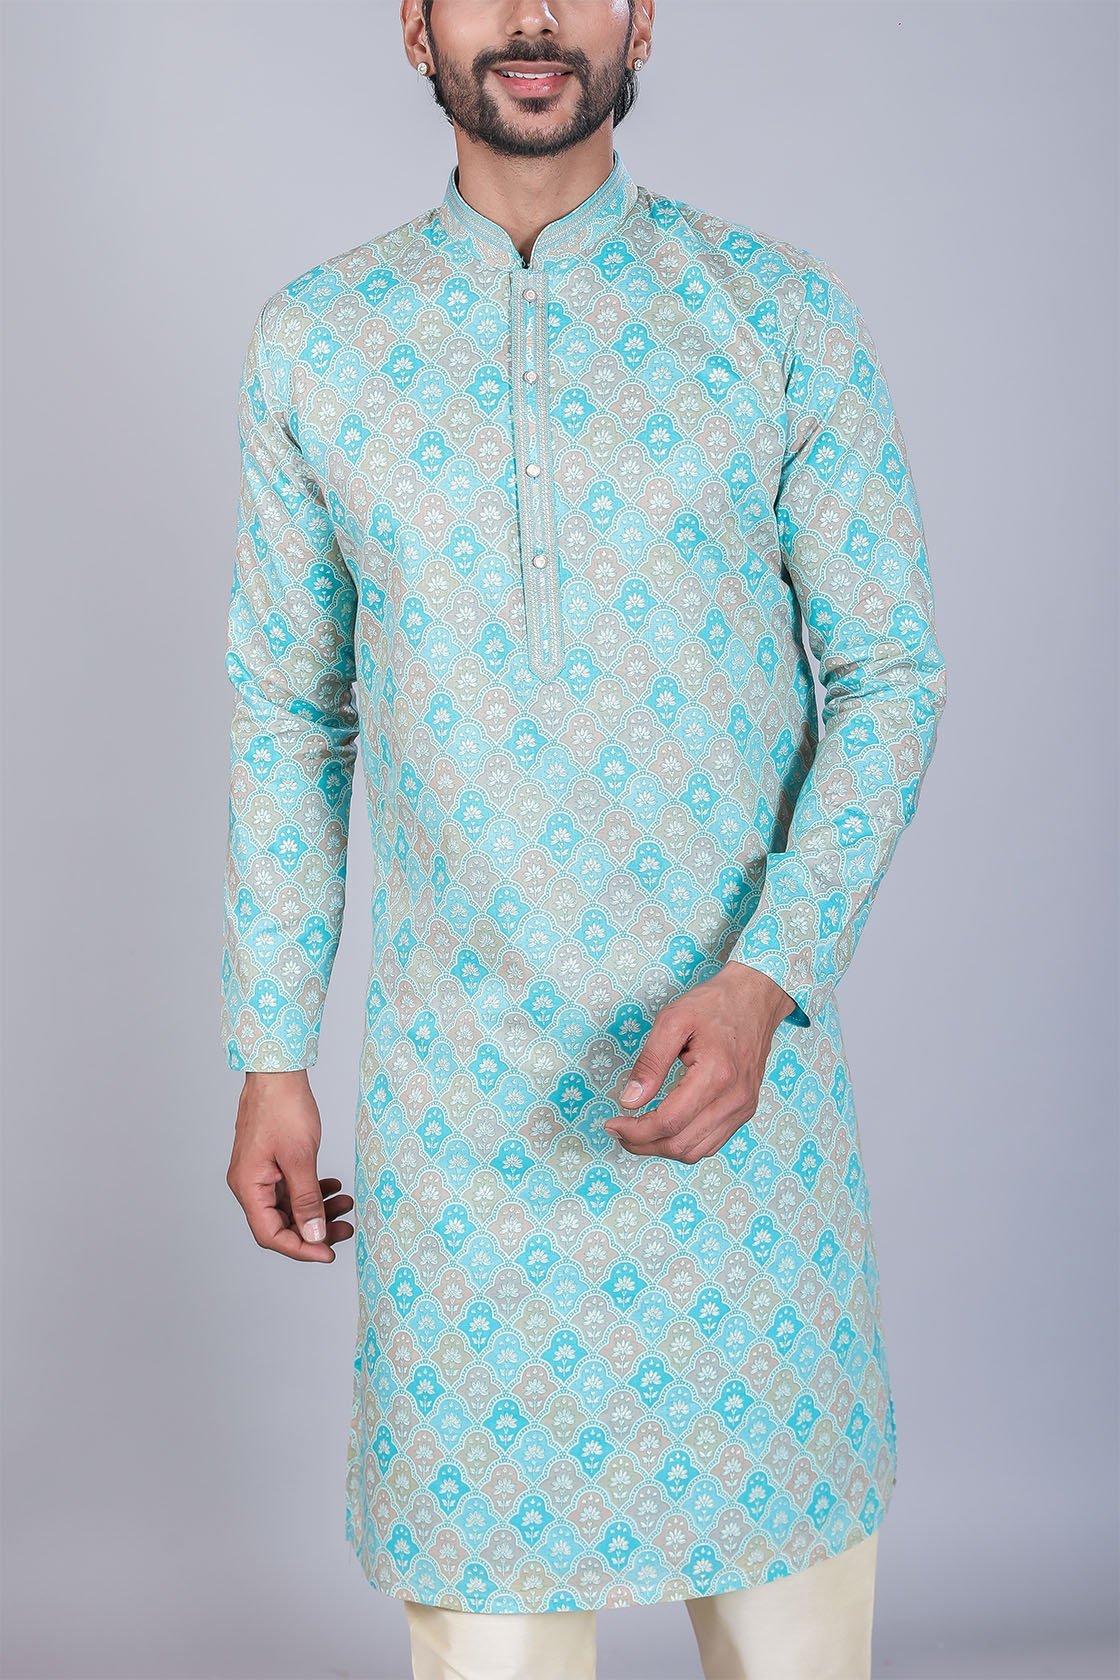 Mahavir-NX - Buy Online Ethnic Wear for Men